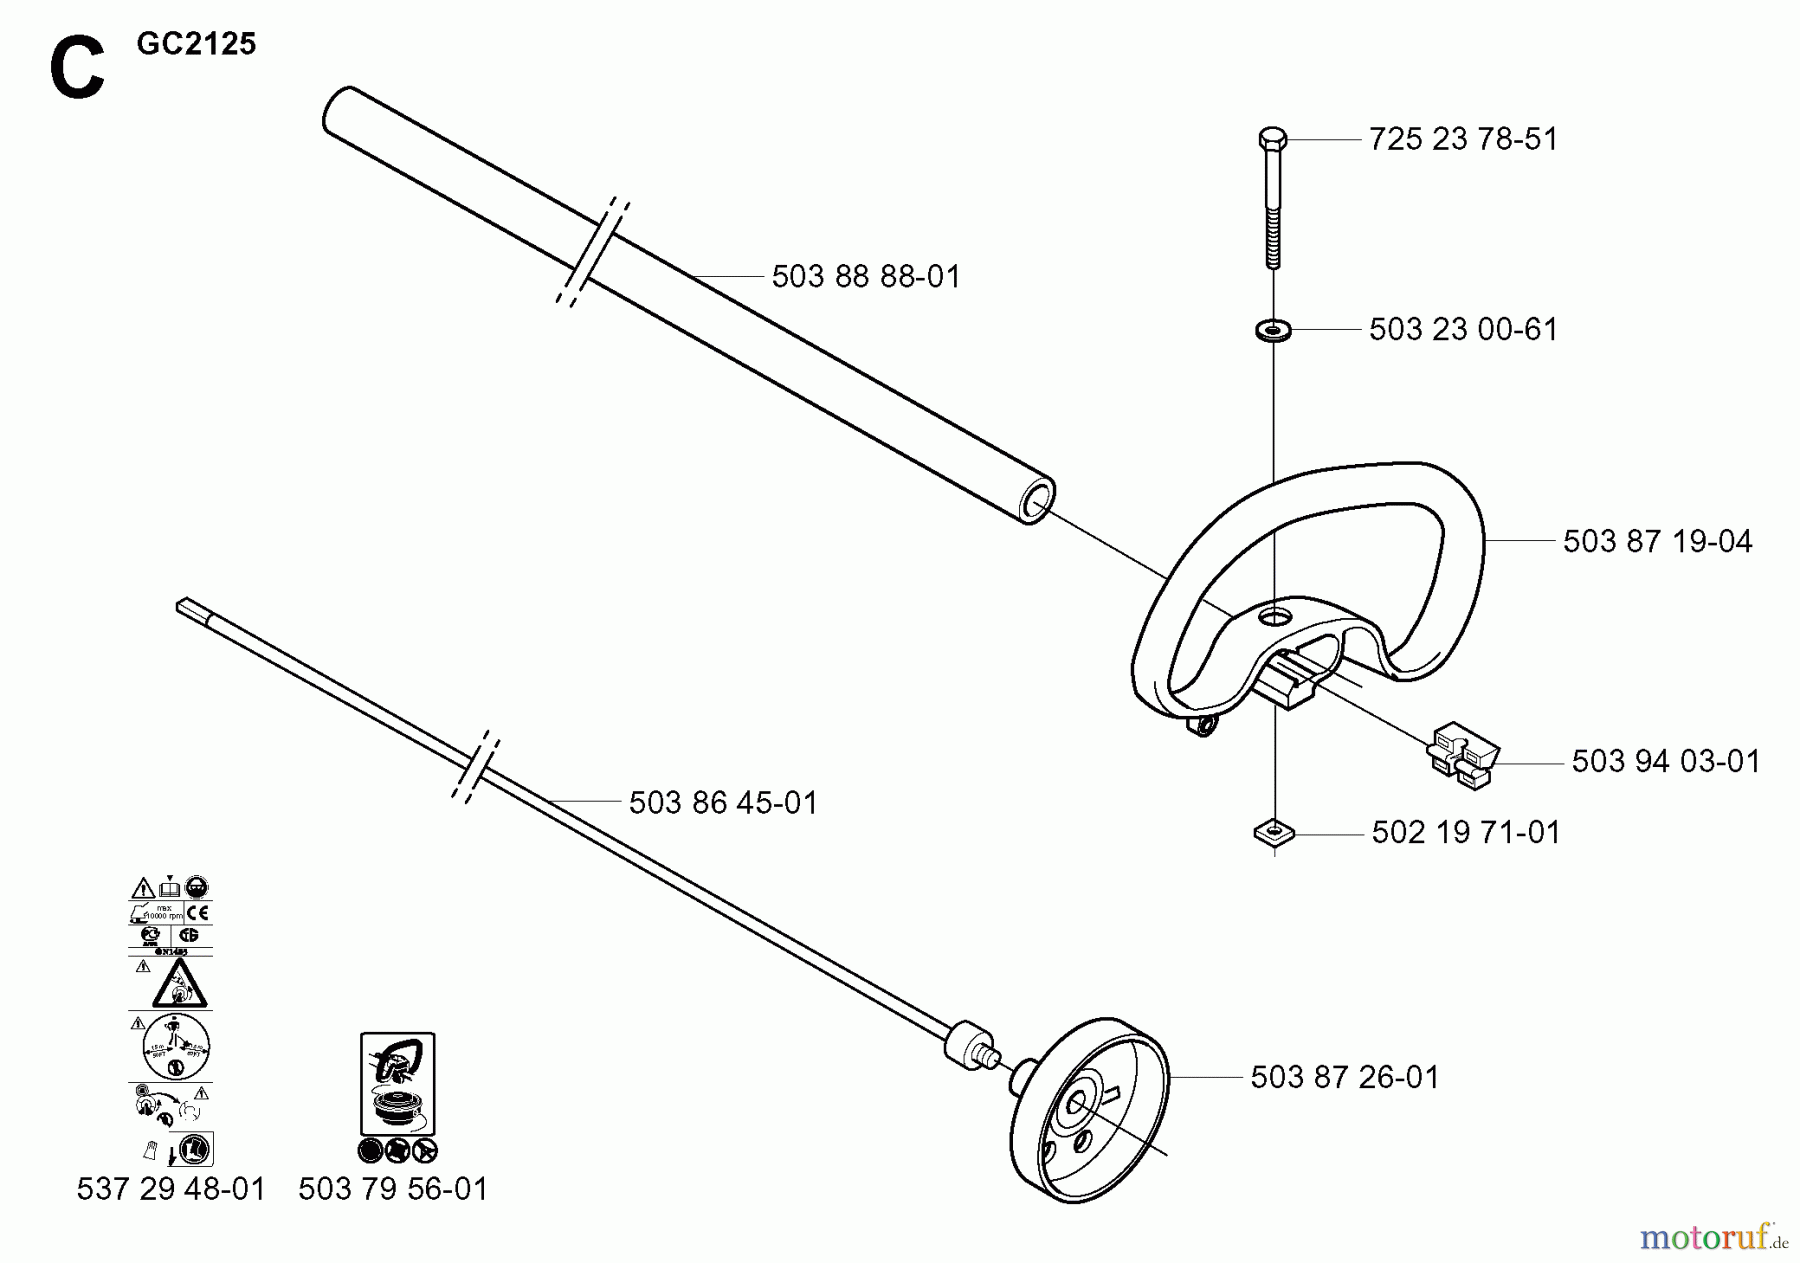  Jonsered Motorsensen, Trimmer GC2125 - Jonsered String/Brush Trimmer (2004-01) SHAFT HANDLE